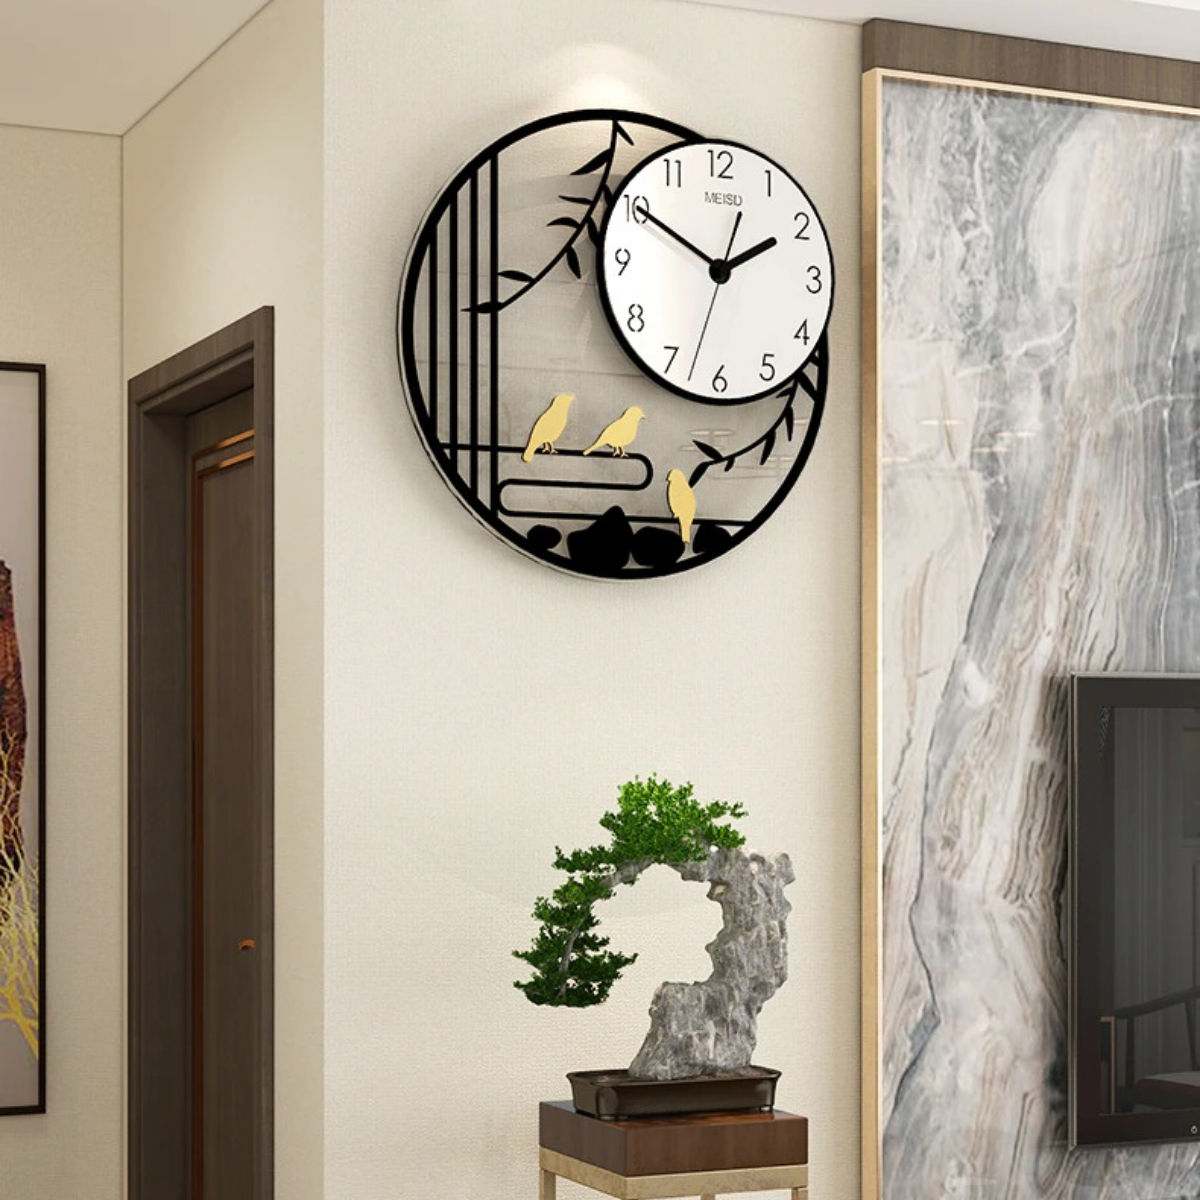 Đồng hồ treo tường trang trí ️KHÔNG CẦN KHOAN TƯỜNG ️ Trang trí phòng khách sang trọng ️ Kèm pin và bộ kim thay thế ️